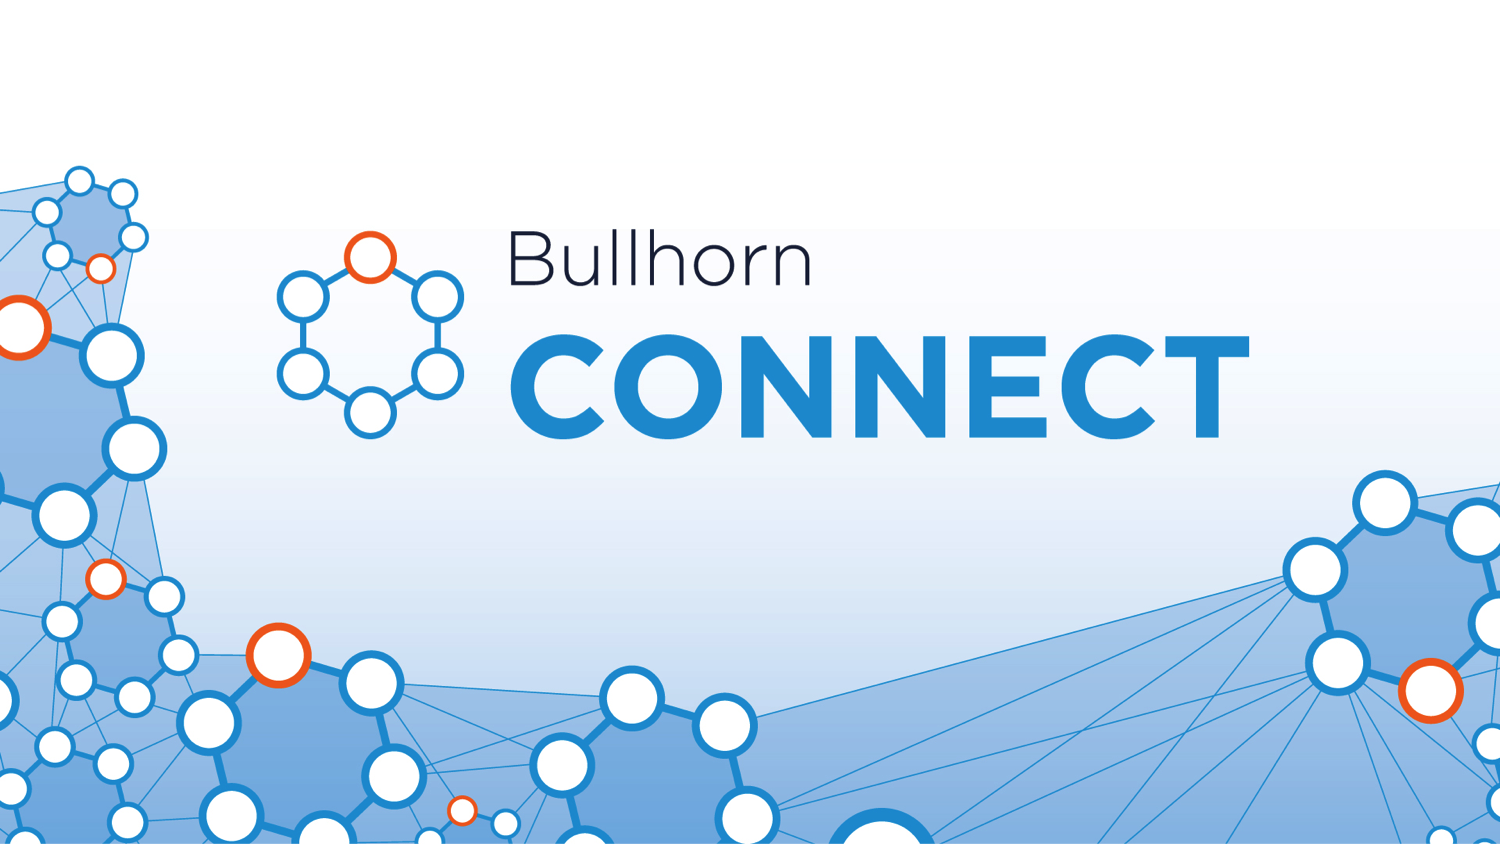 Bullhorn Connect